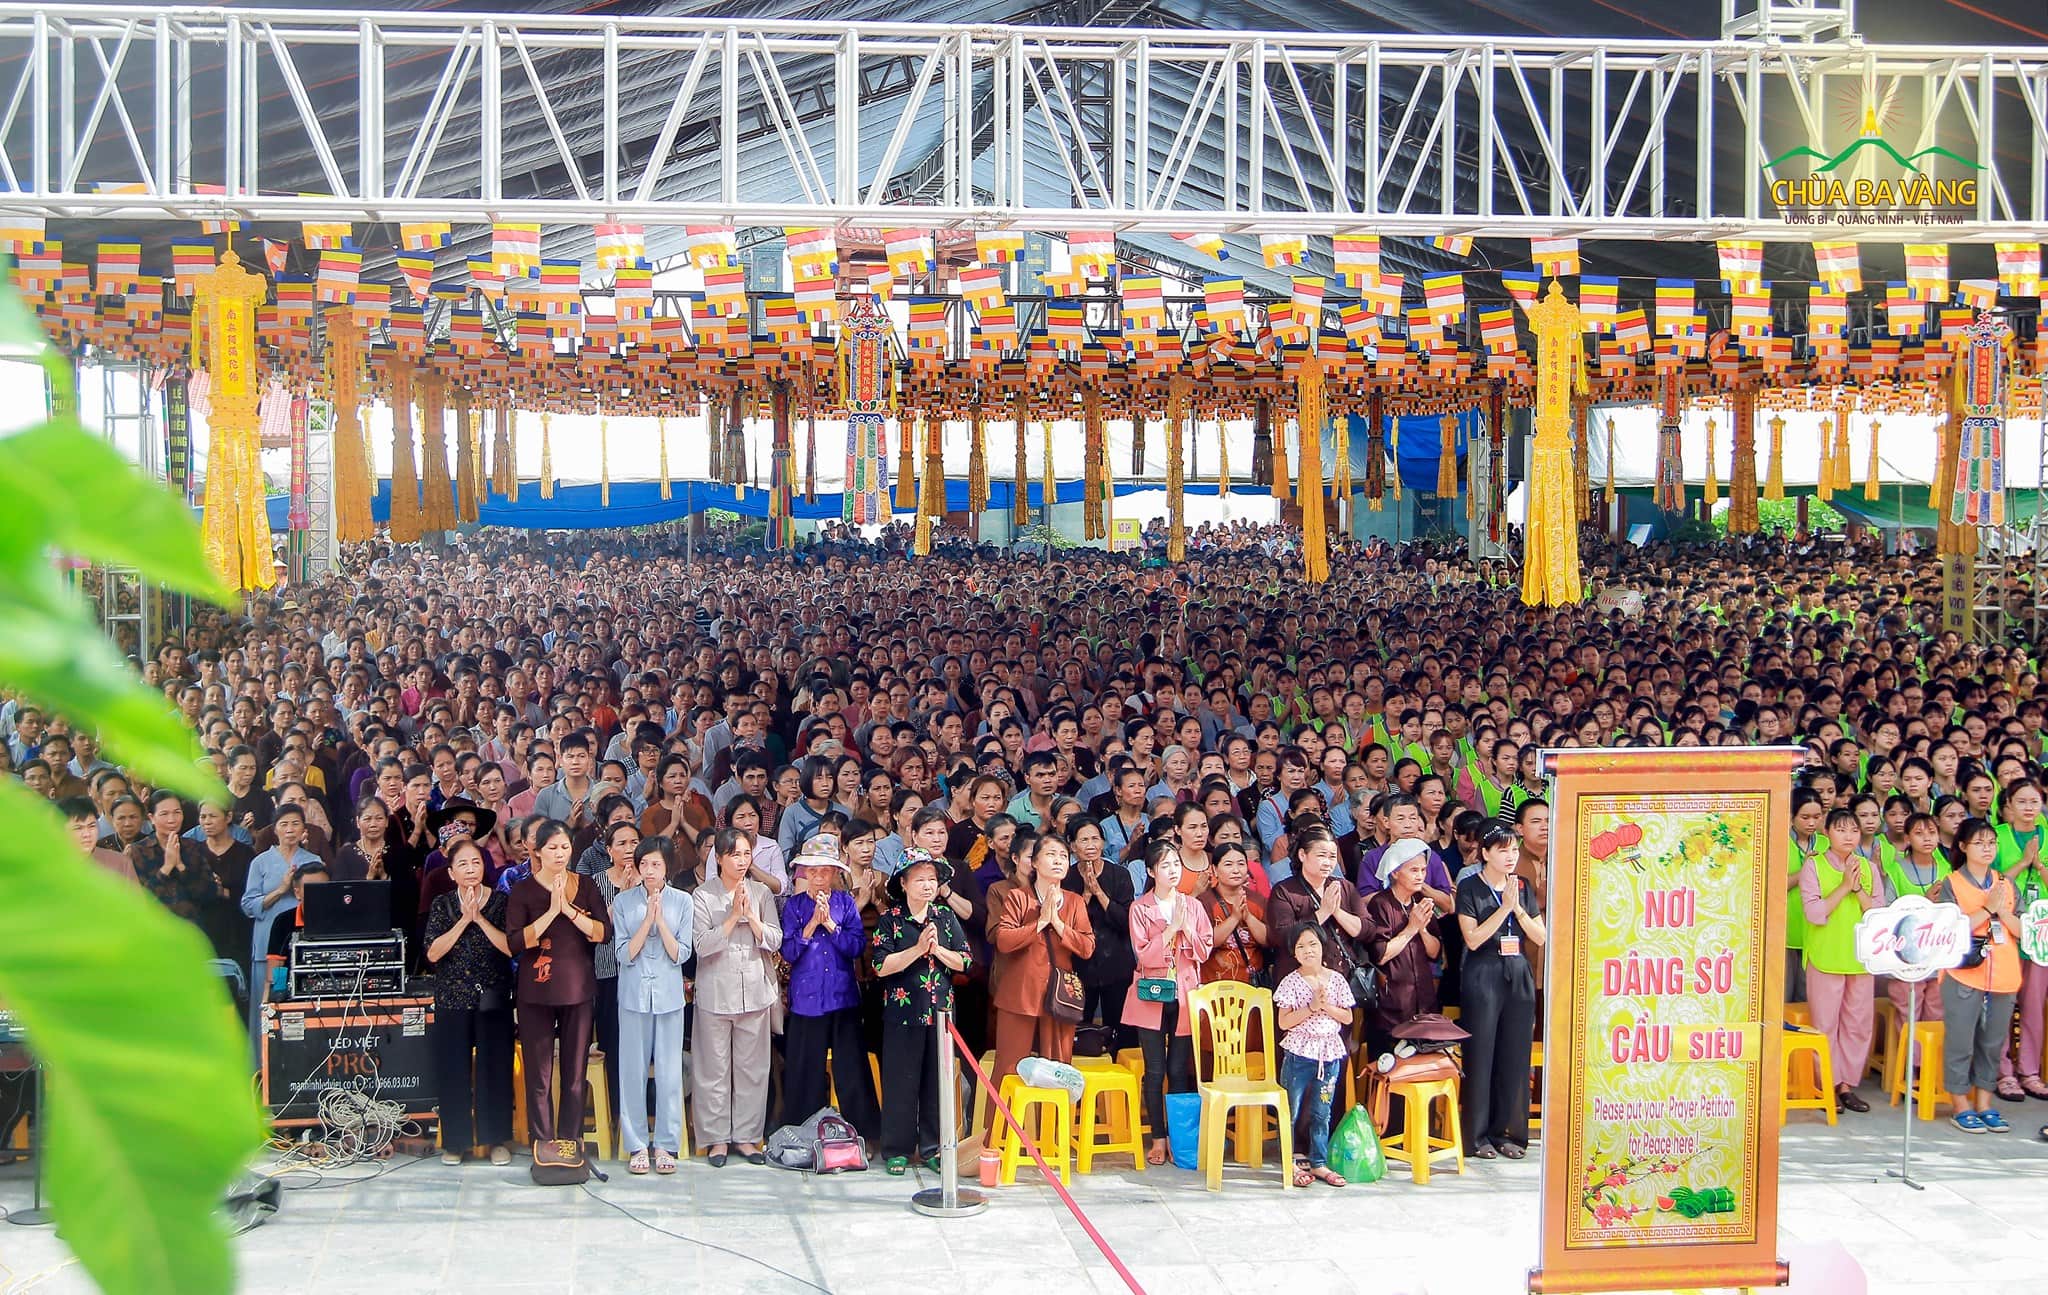 Hơn 25 ngàn người trên khắp mọi miền tổ quốc đã về tham gia lễ Phát Tâm Bồ Đề tại chùa Ba Vàng ngày 19/6